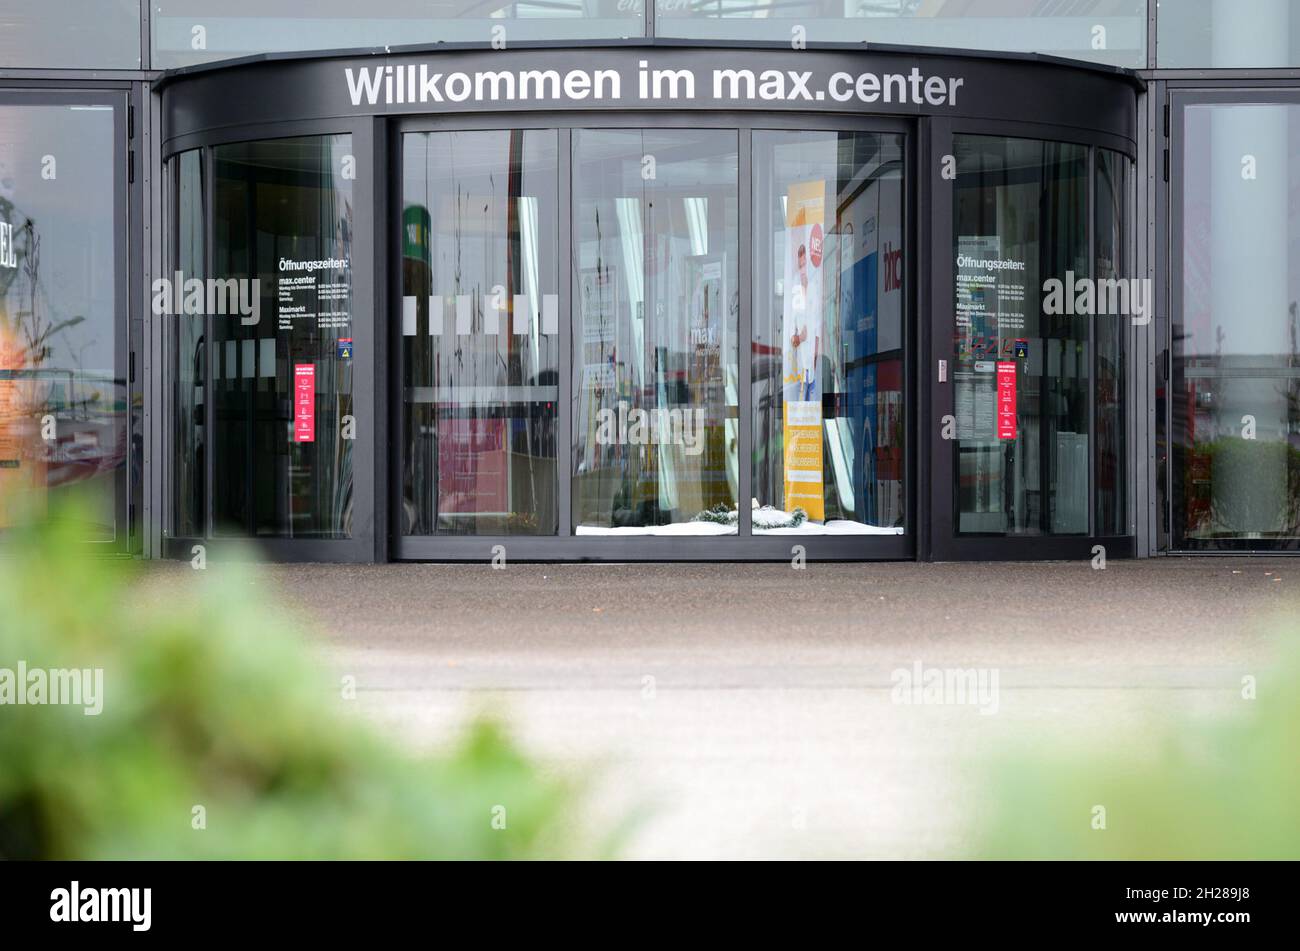 Lockdown in Österreich, geschlossenes Einkaufszentrum (Europa) - Lockdown in Austria, closed shopping center (Europe) Stock Photo